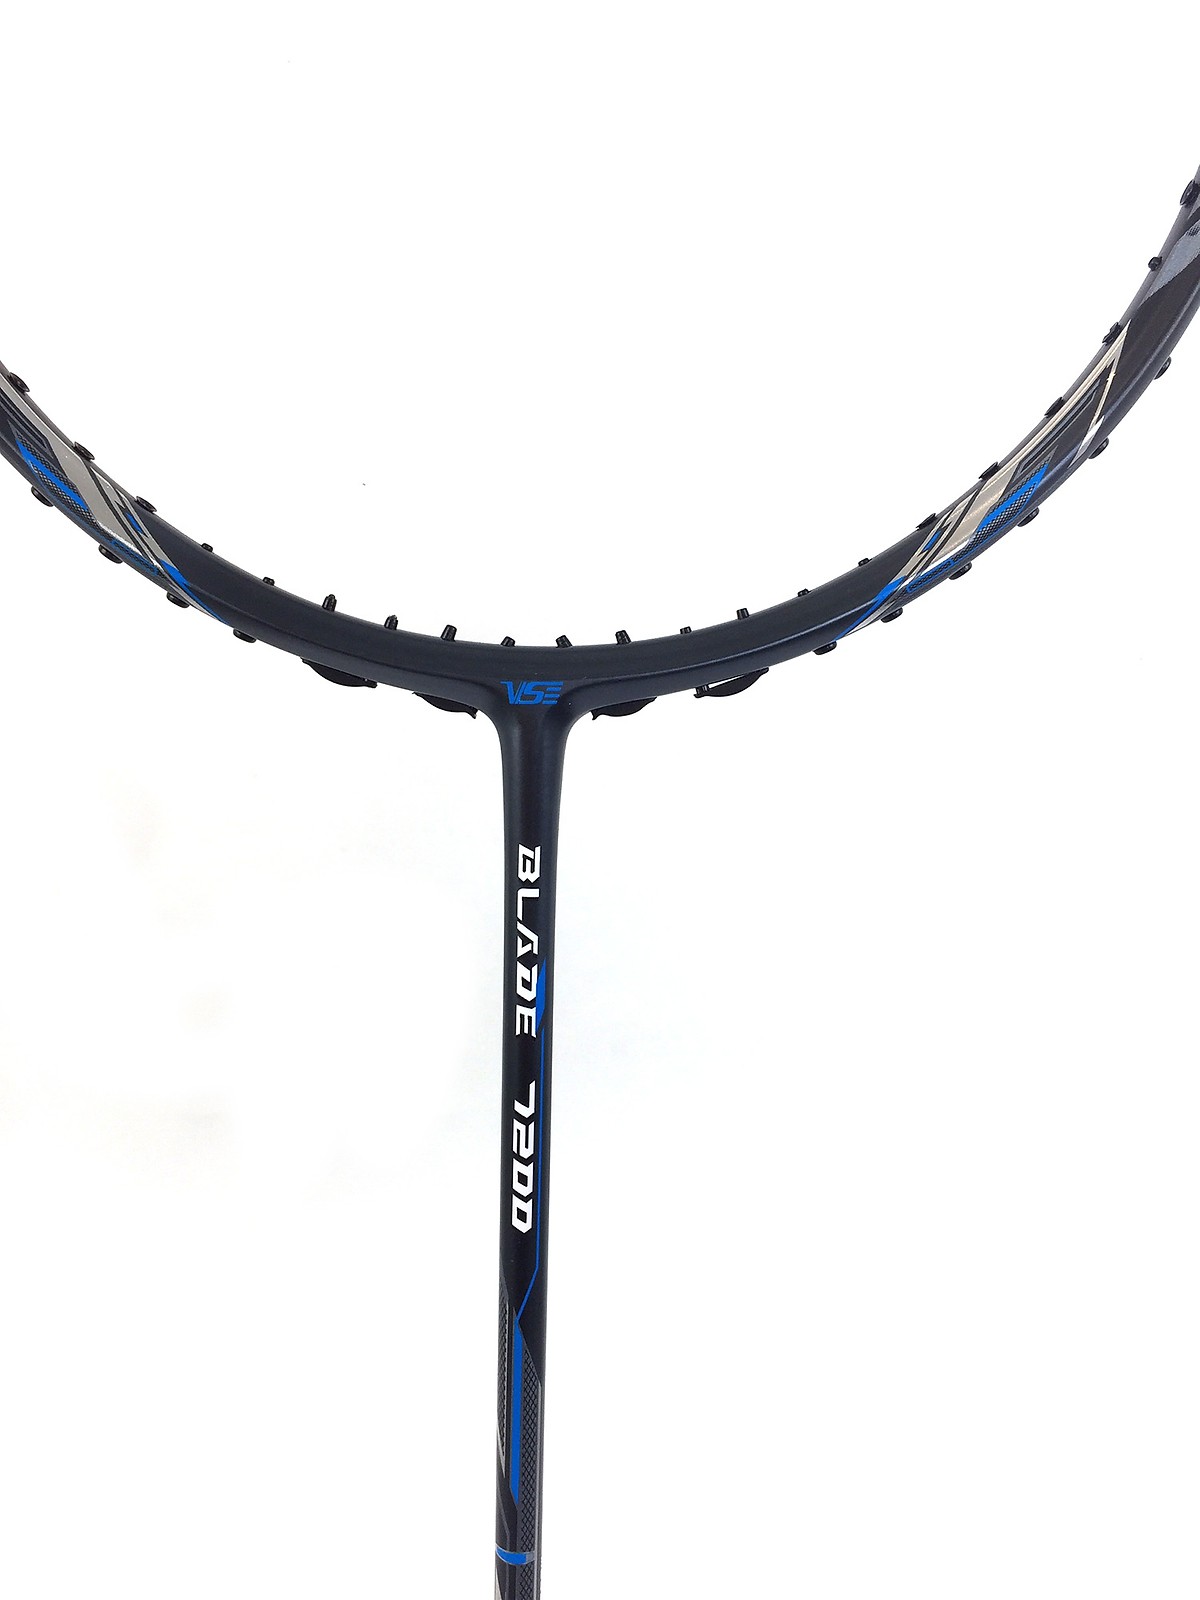 Vợt Cầu Lông VS 7200 BLADE - Tặng kèm cước + quấn cán vợt -đen pha xanh